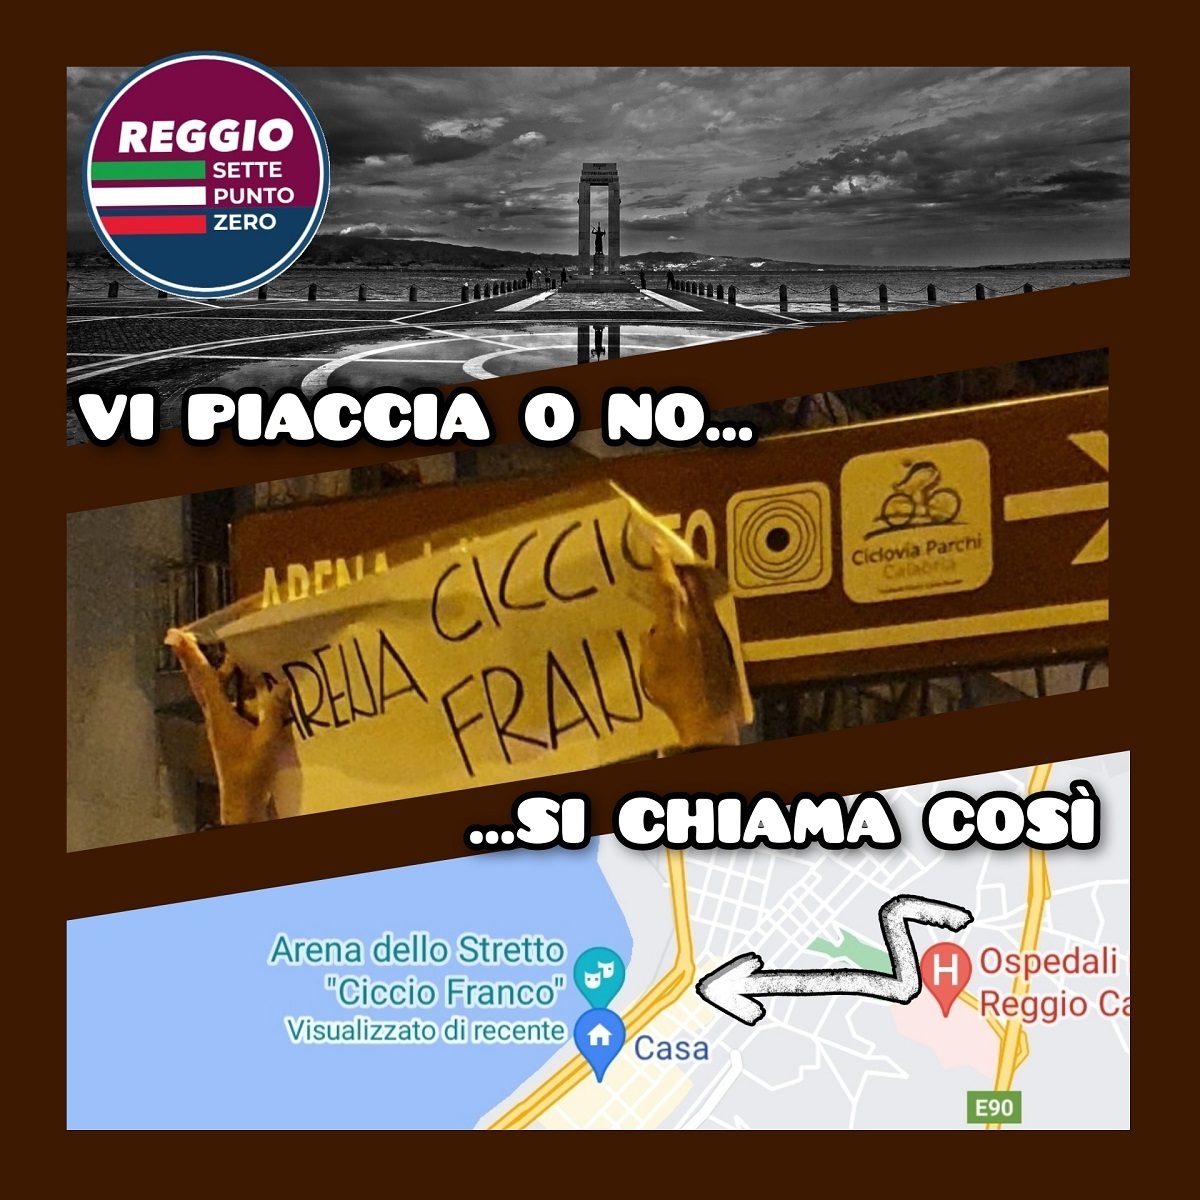 Reggio Sette Punto Zero-Arena Ciccio Franco